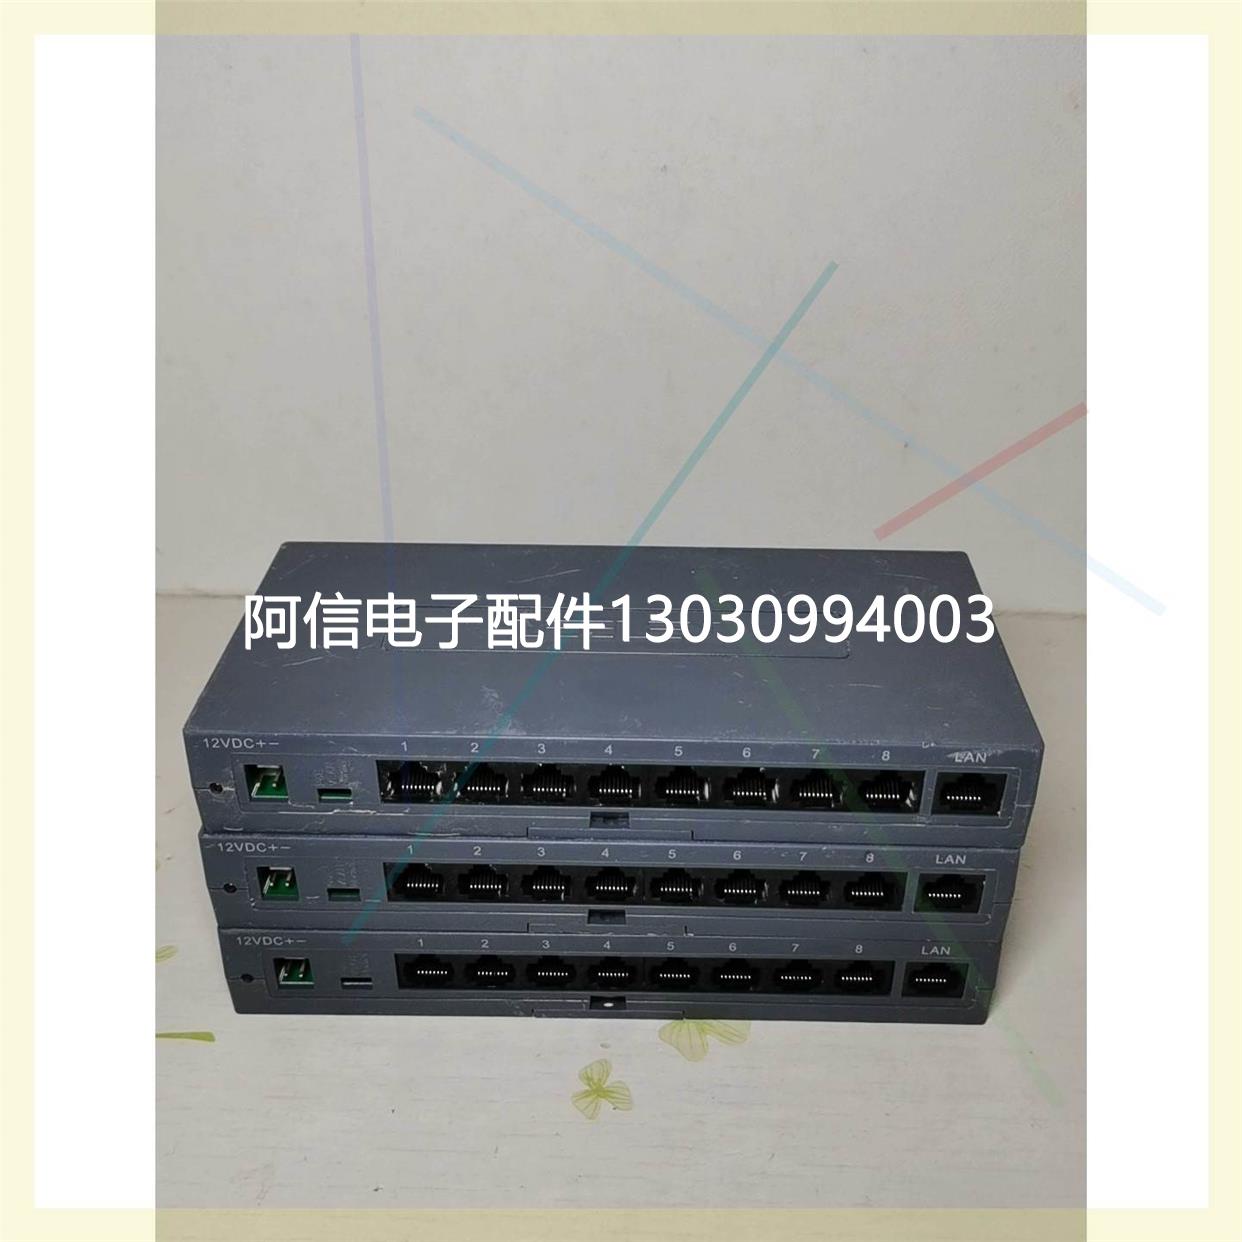 【议价】立林数字对讲网络分配器 EH-6604-XPE01-108